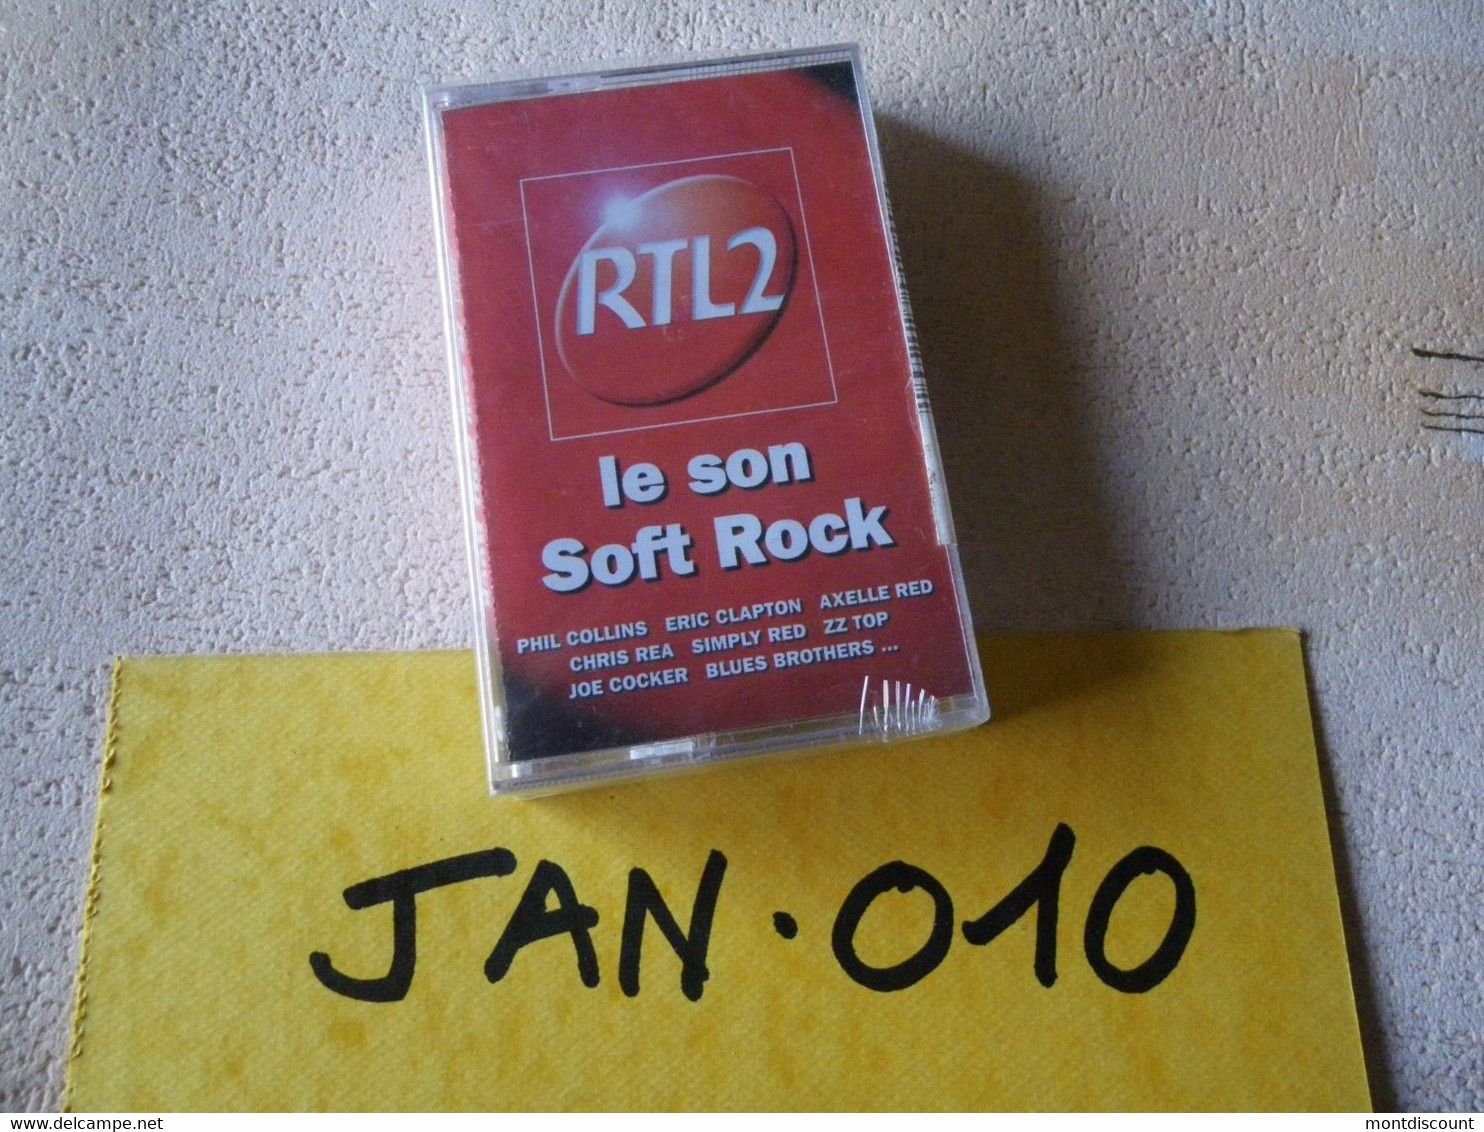 LE SON SOFT ROCK AUDIO EMBALLE D'ORIGINE JAMAIS SERVIE... VOIR PHOTO... (JAN 010) - Cassettes Audio